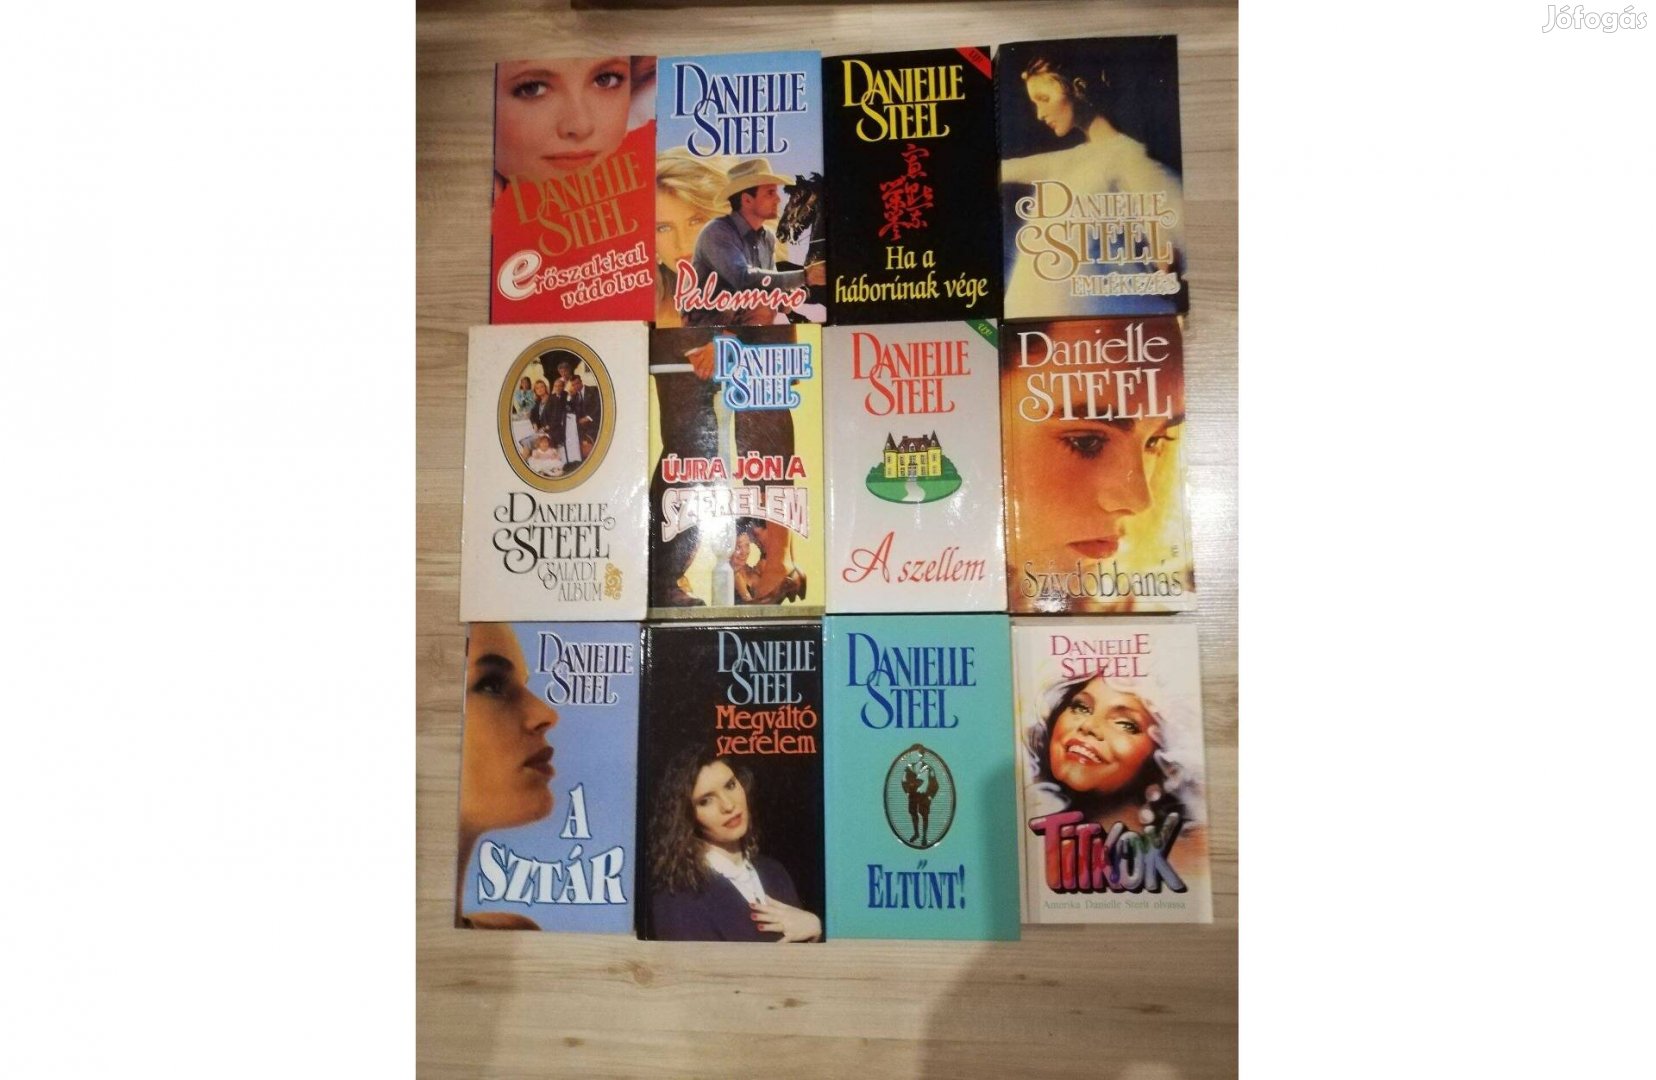 Danielle Steel regények eladóki